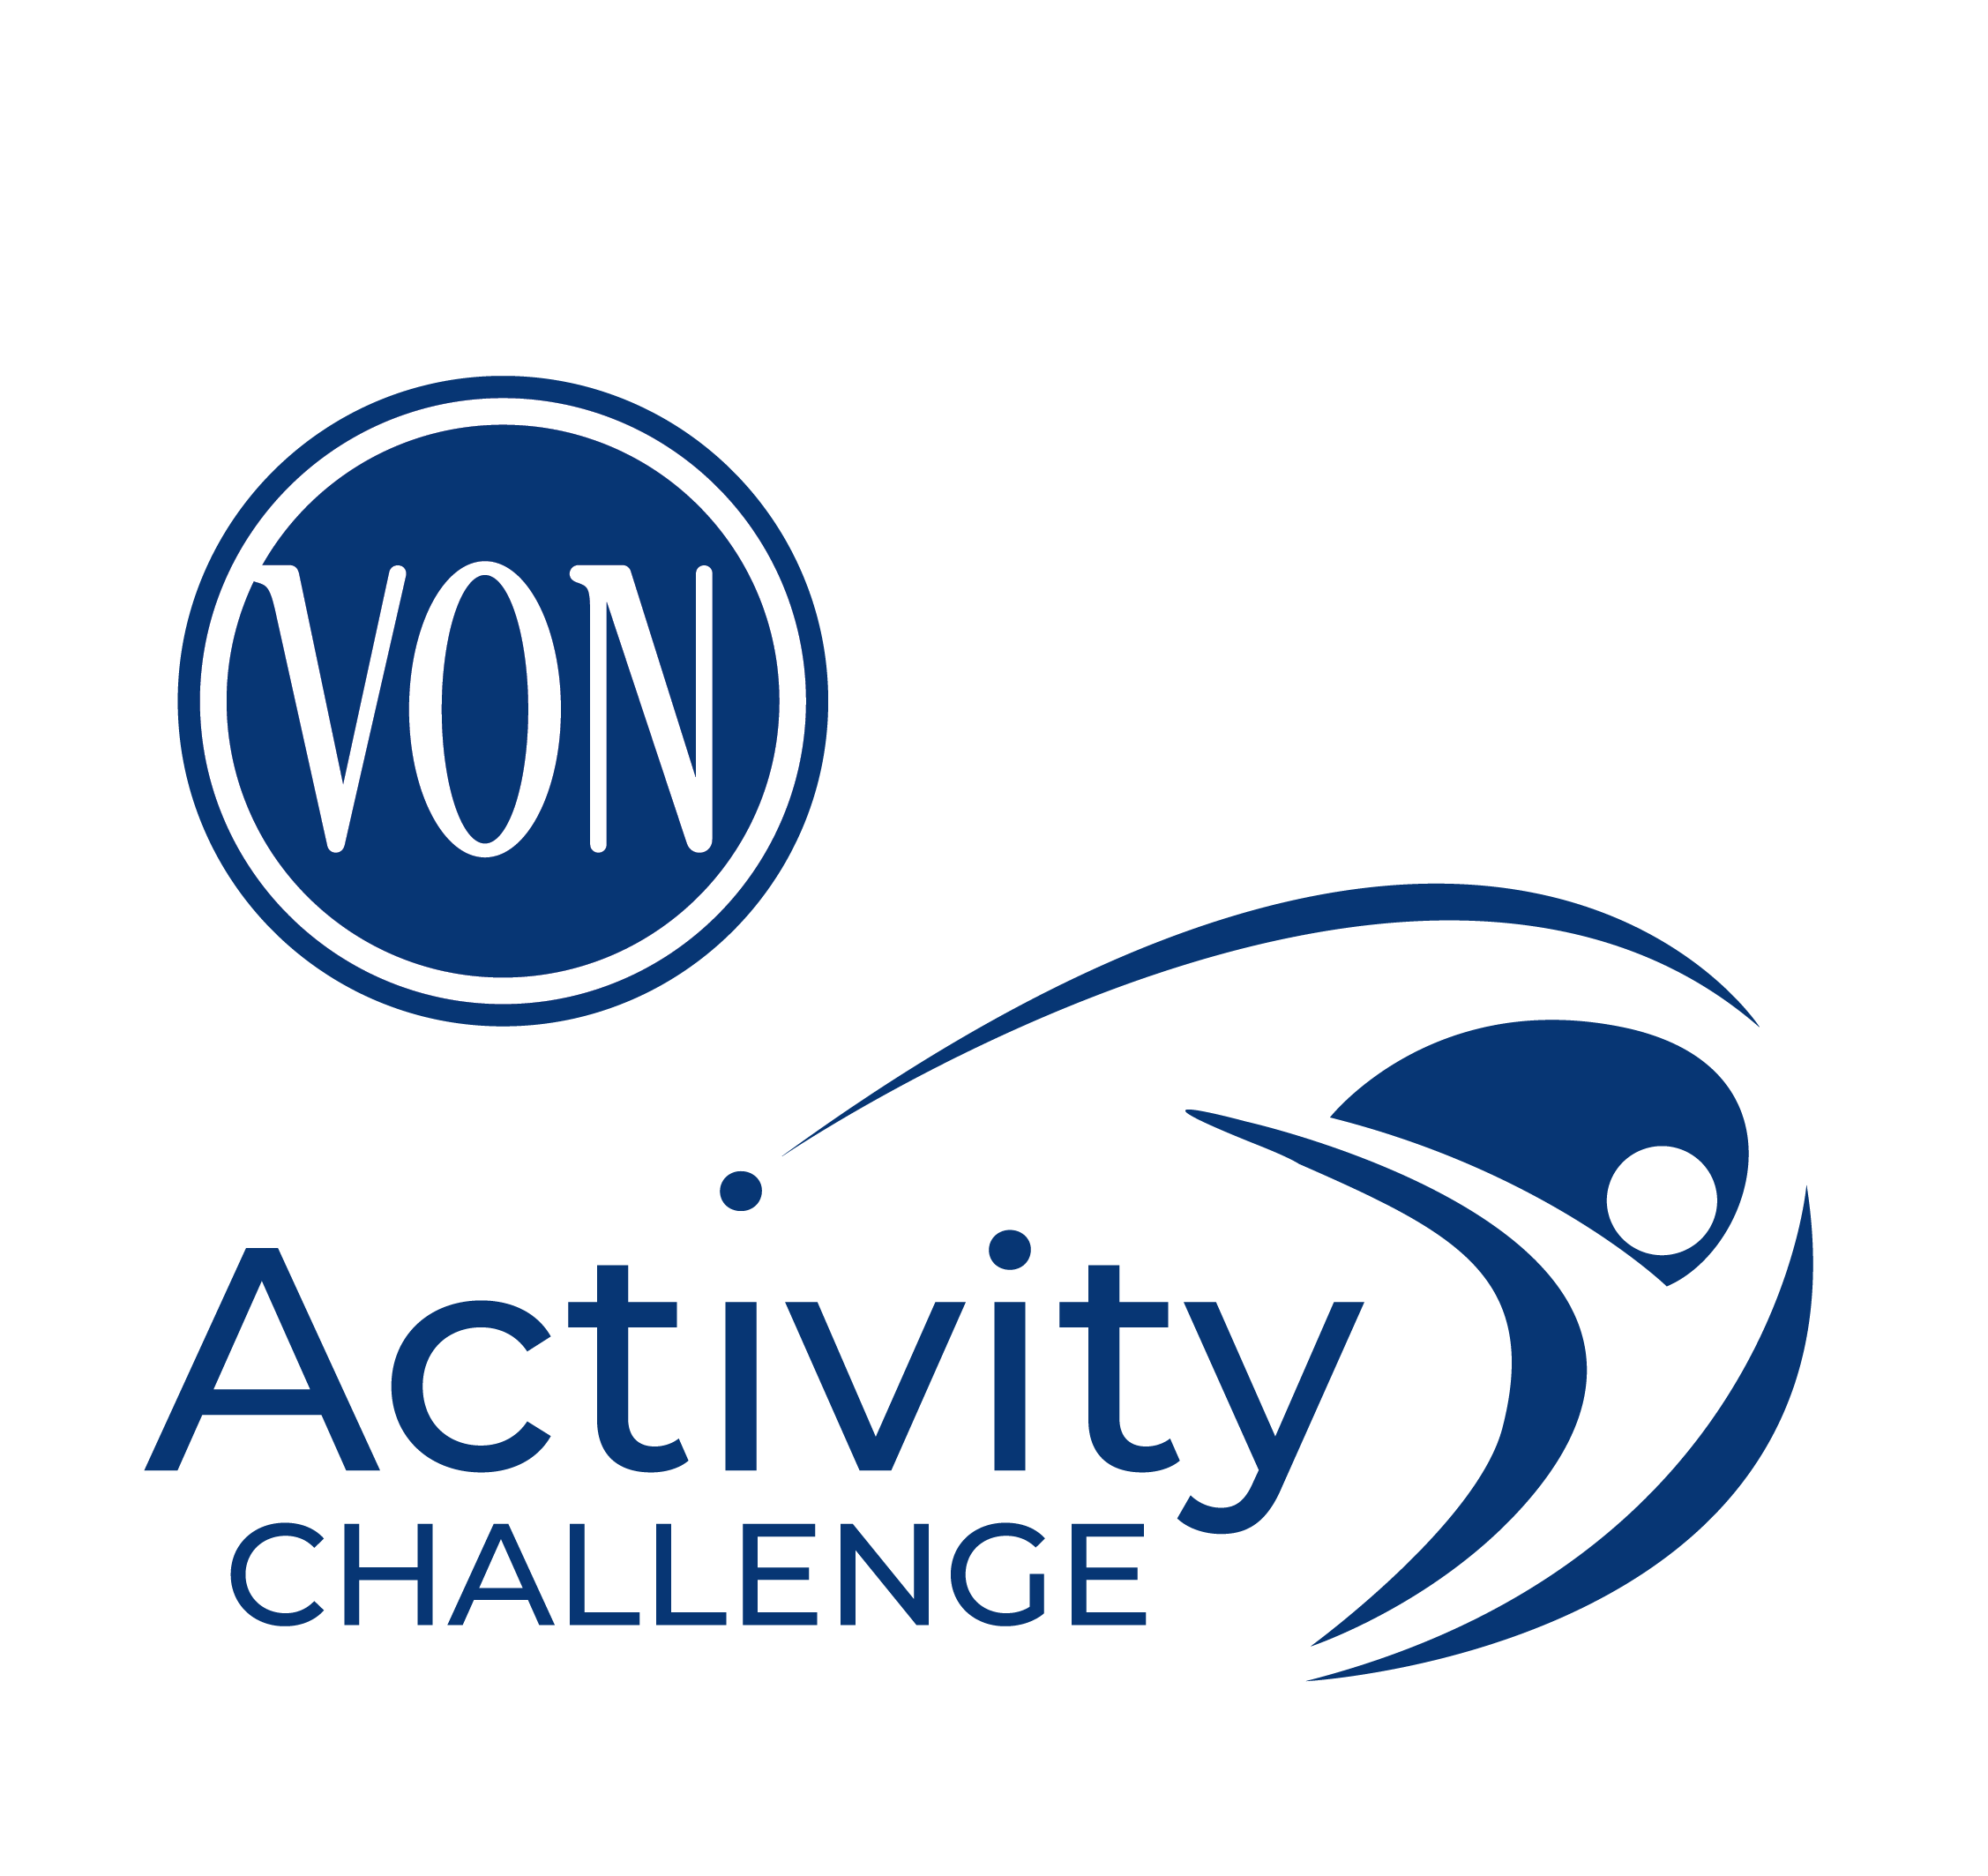 VON Activity Challenge